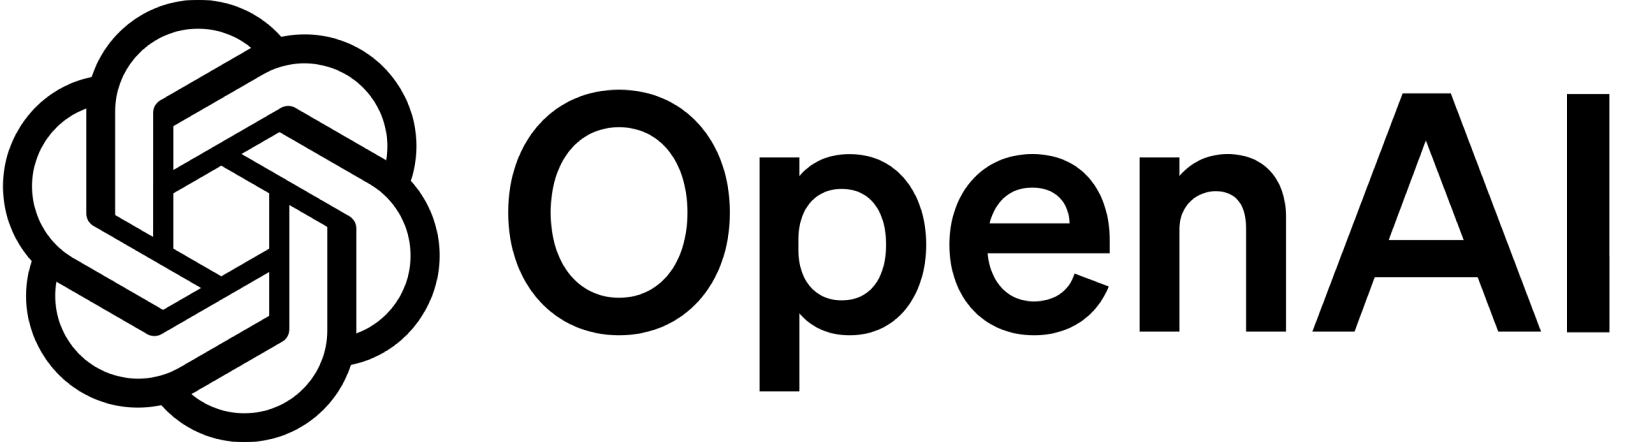 open-ai logo